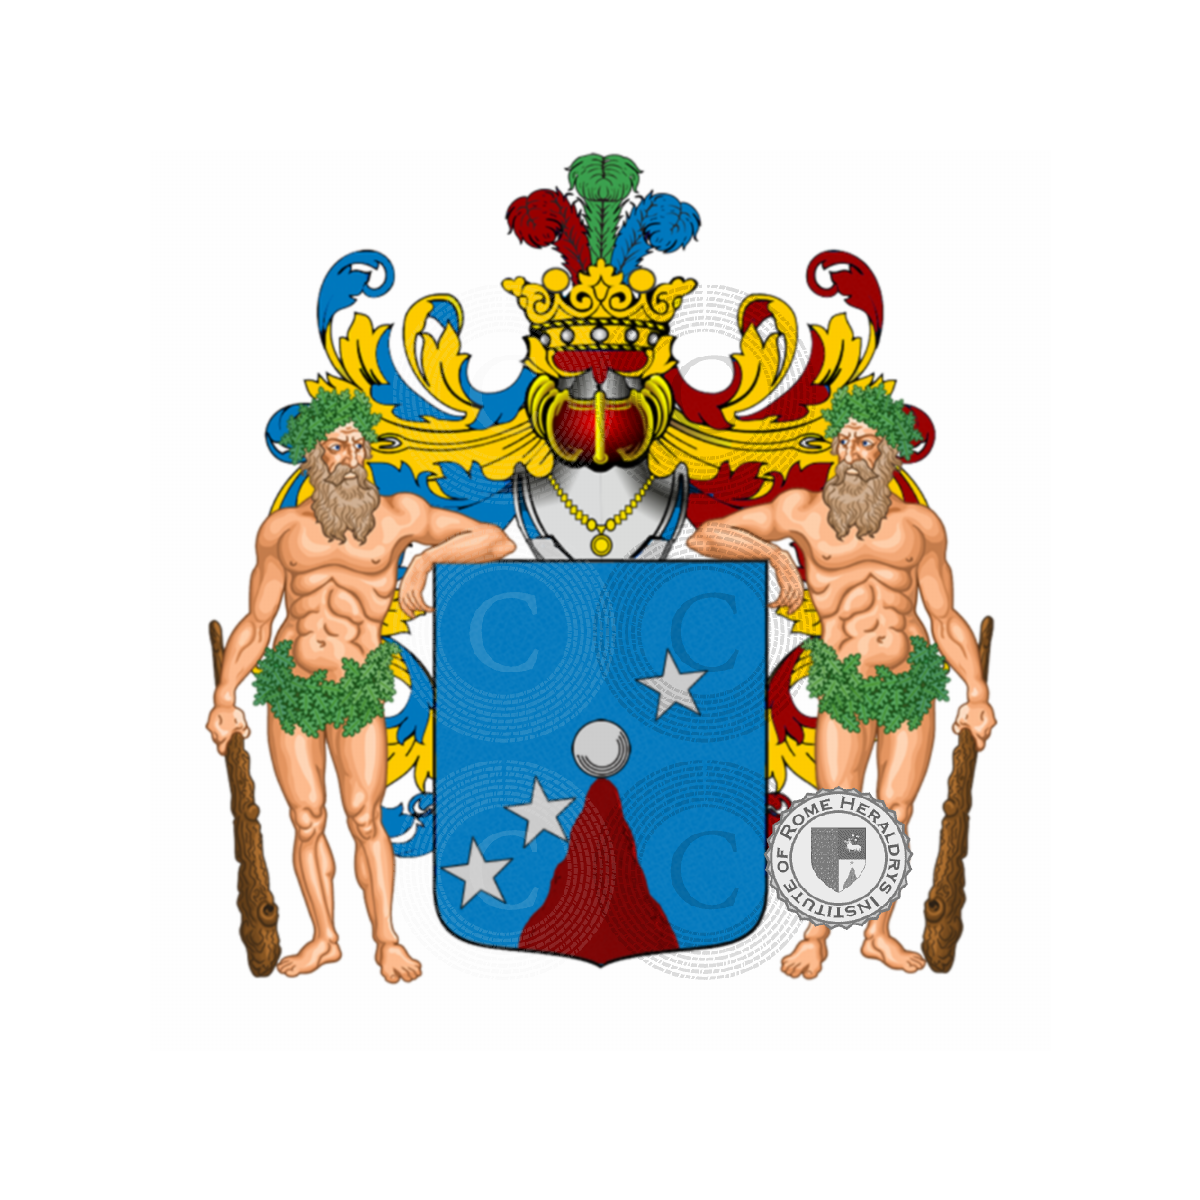 Coat of arms of familyBono, Buono